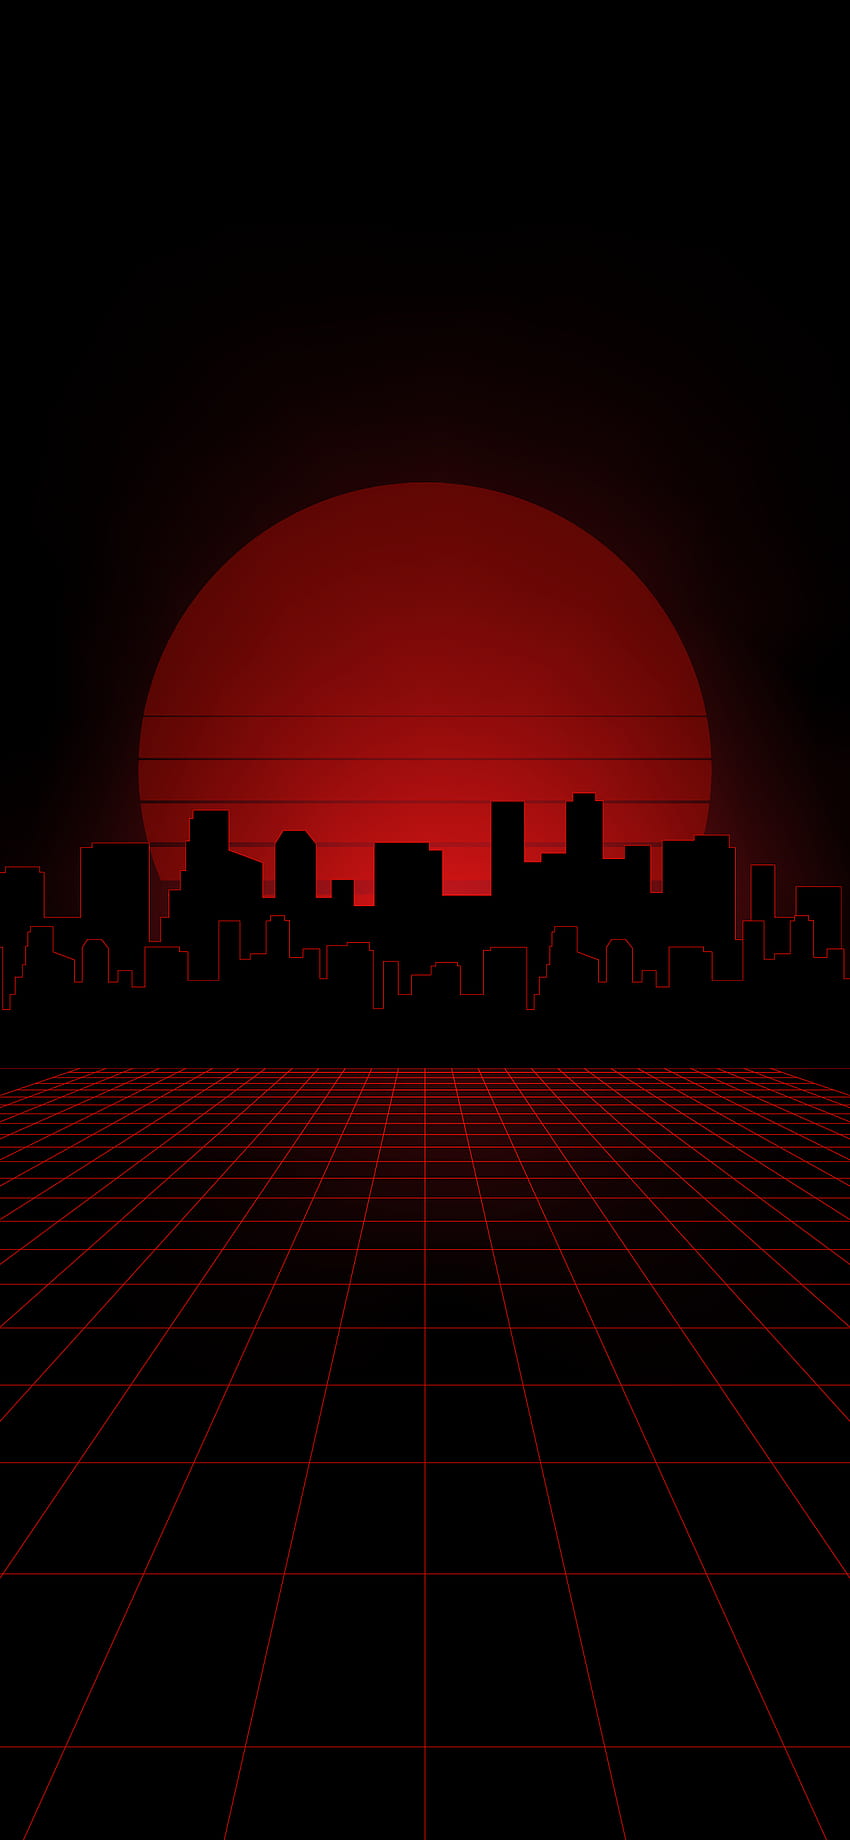 SYNTHWAVE CITY PHONE, estética de ciudad roja fondo de pantalla del teléfono